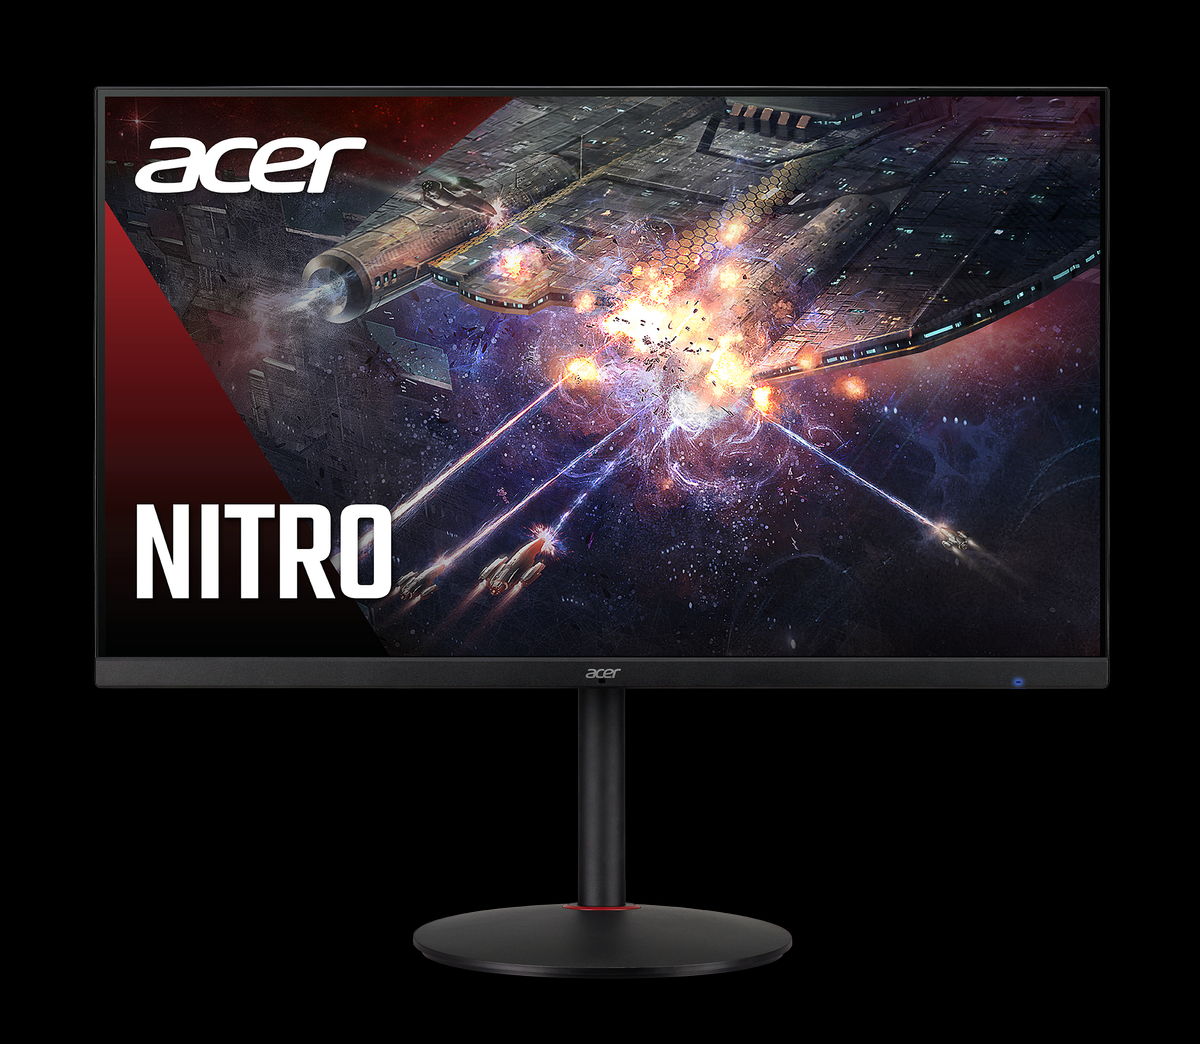 Игровые мониторы Nitro XV2 от Acer стали доступны в России